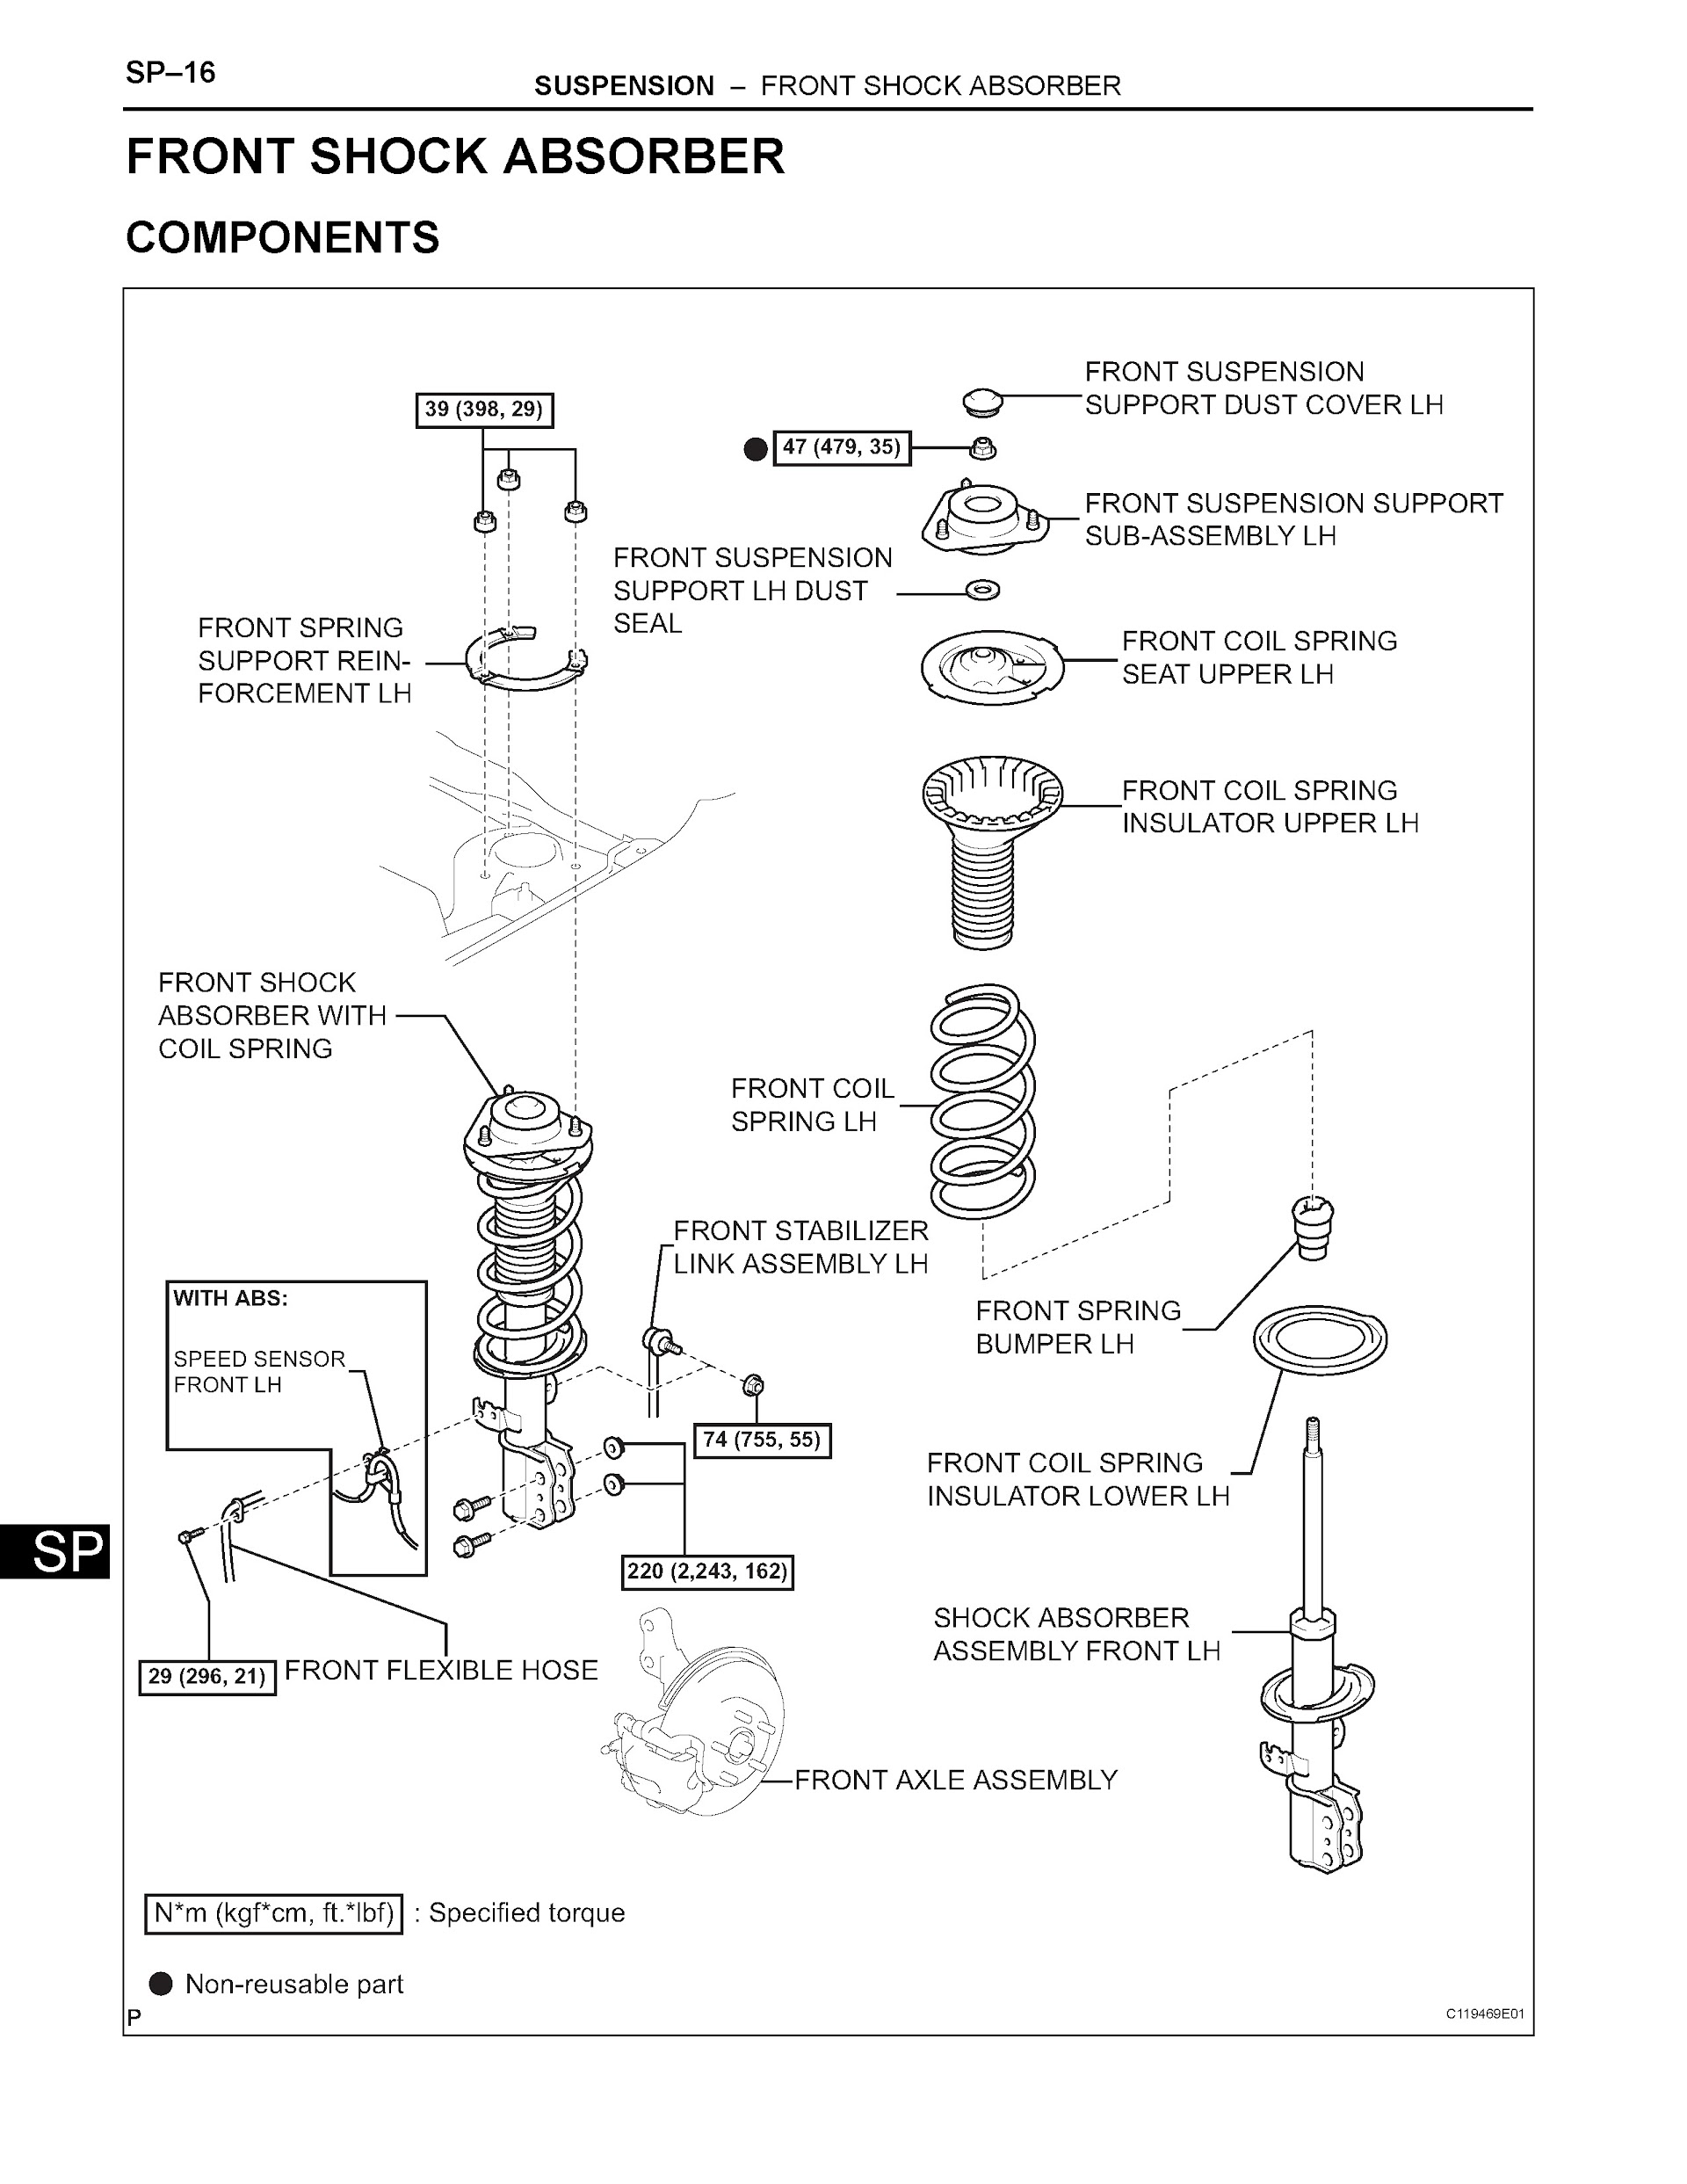 2007 Toyota Matrix Repair Manual, Front Shock Absorber